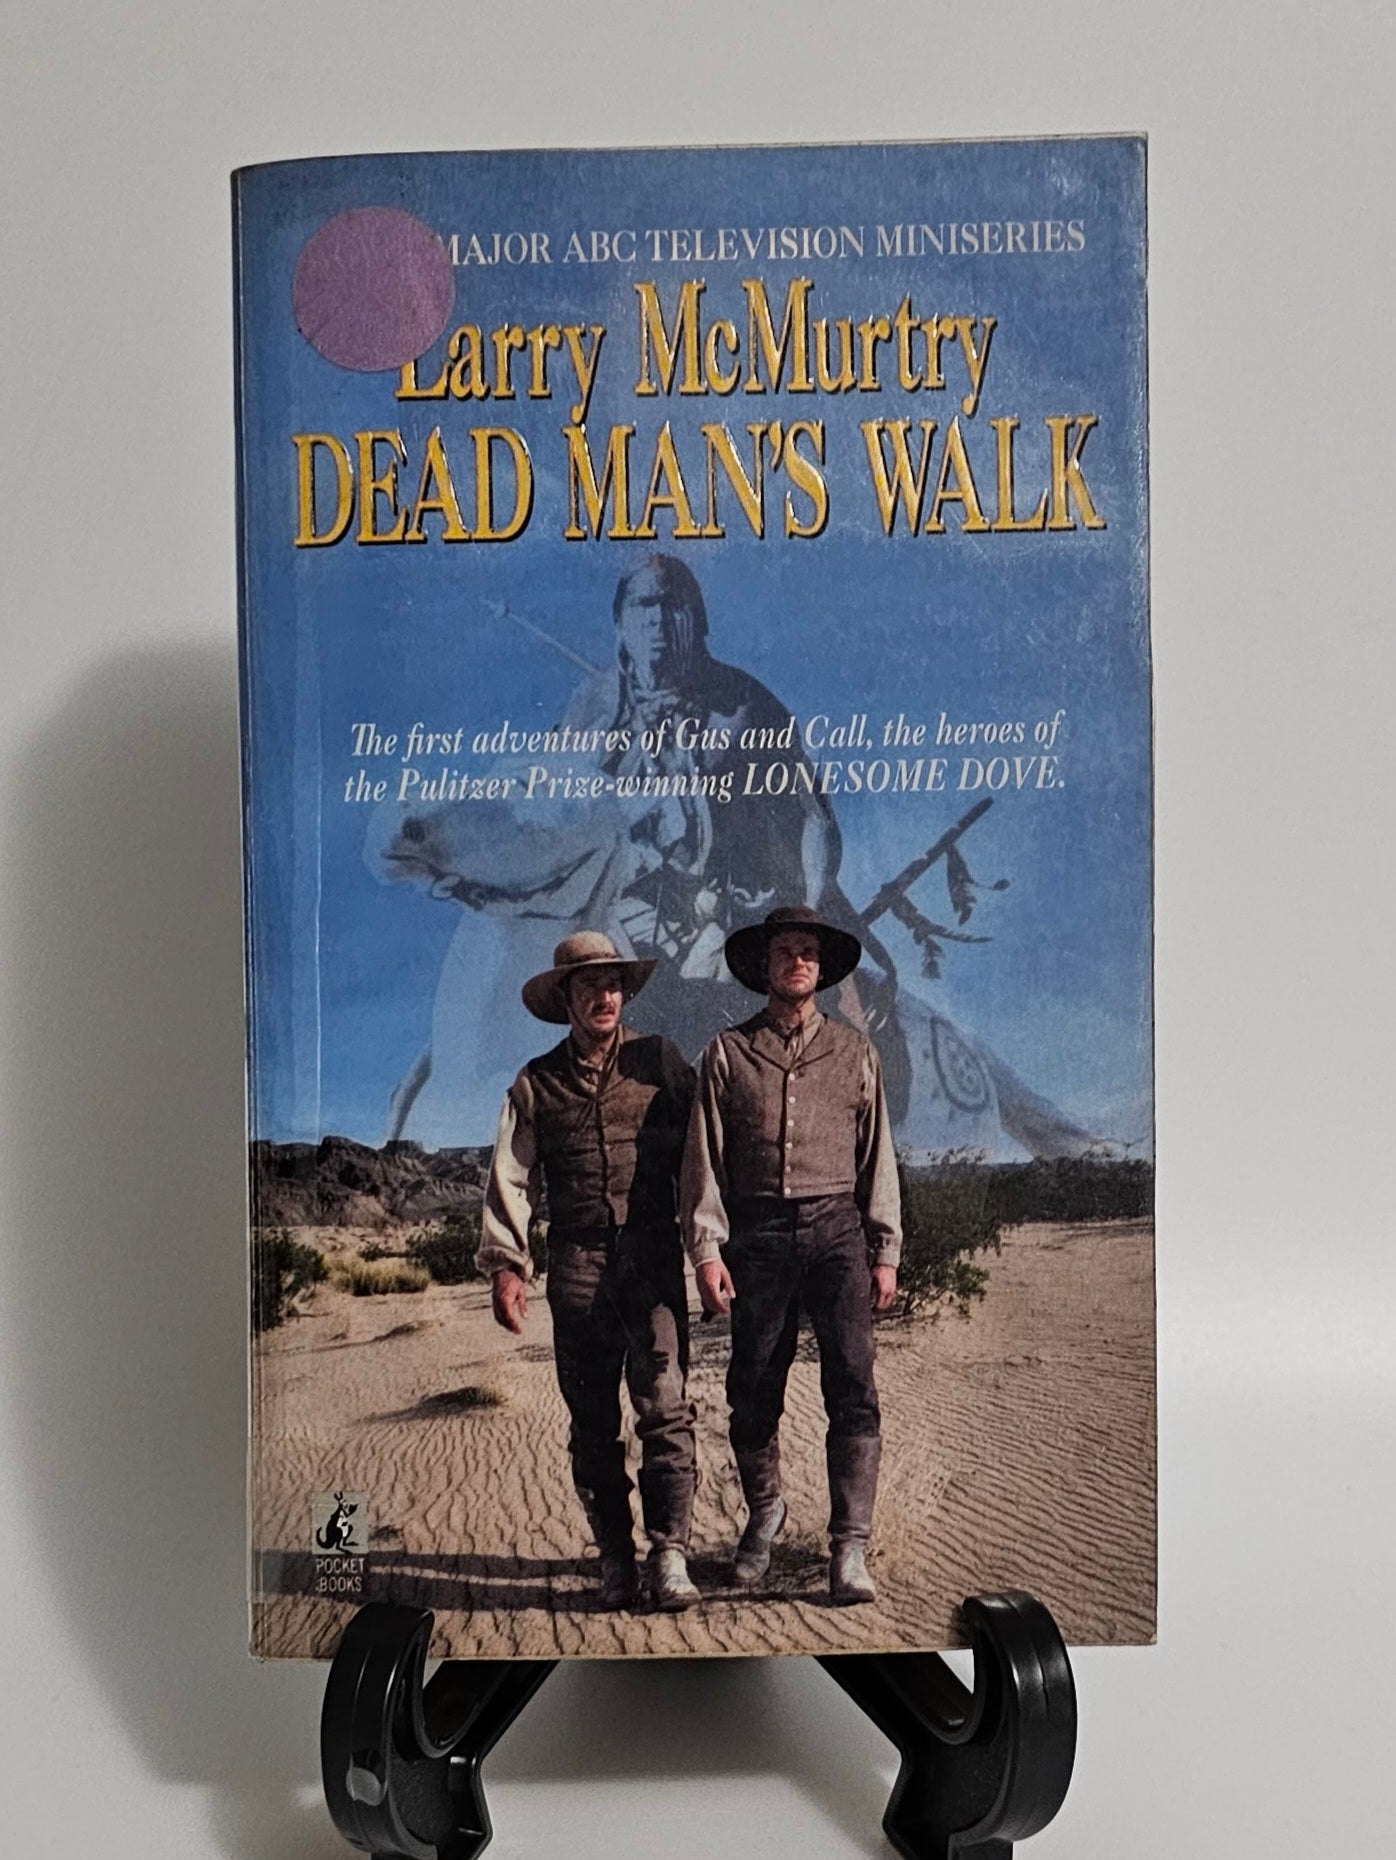 Dead Man's Walk by Larry McMurty